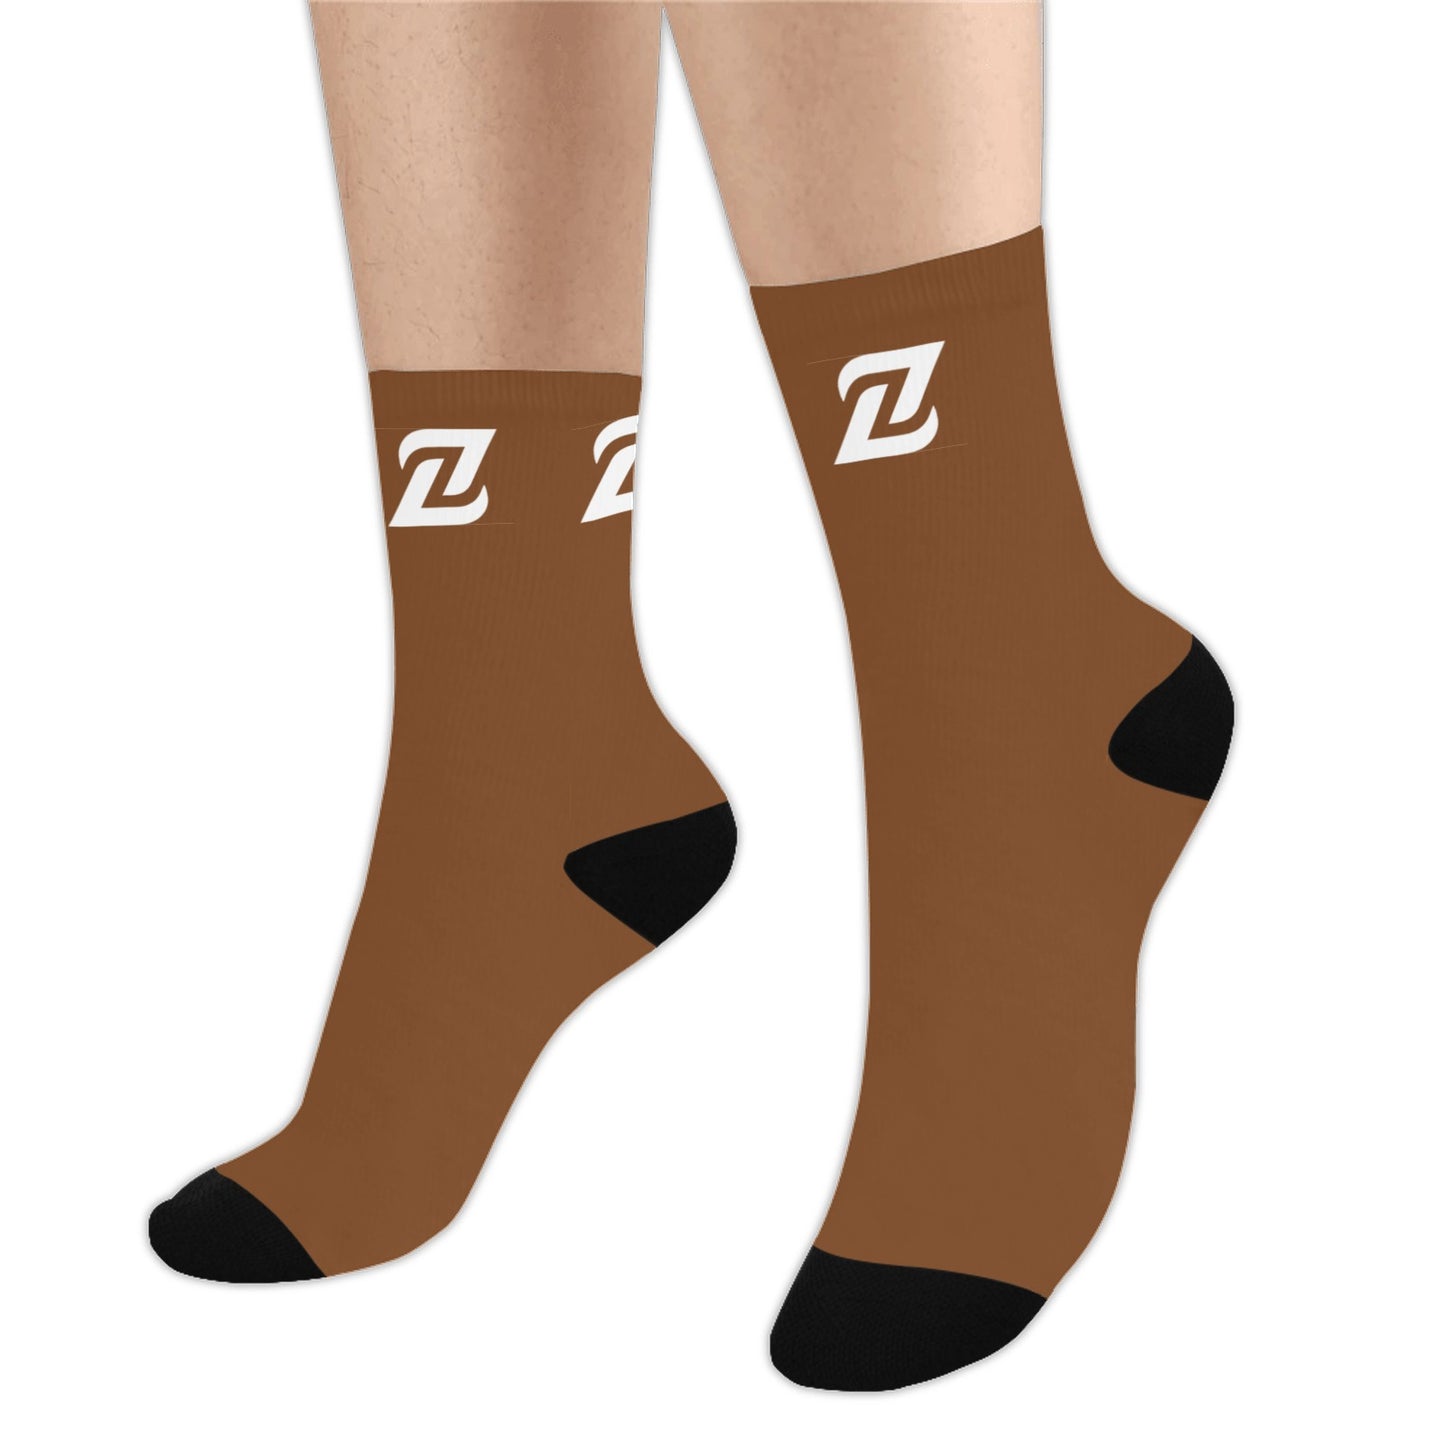 Zen Socks - Nude Brown